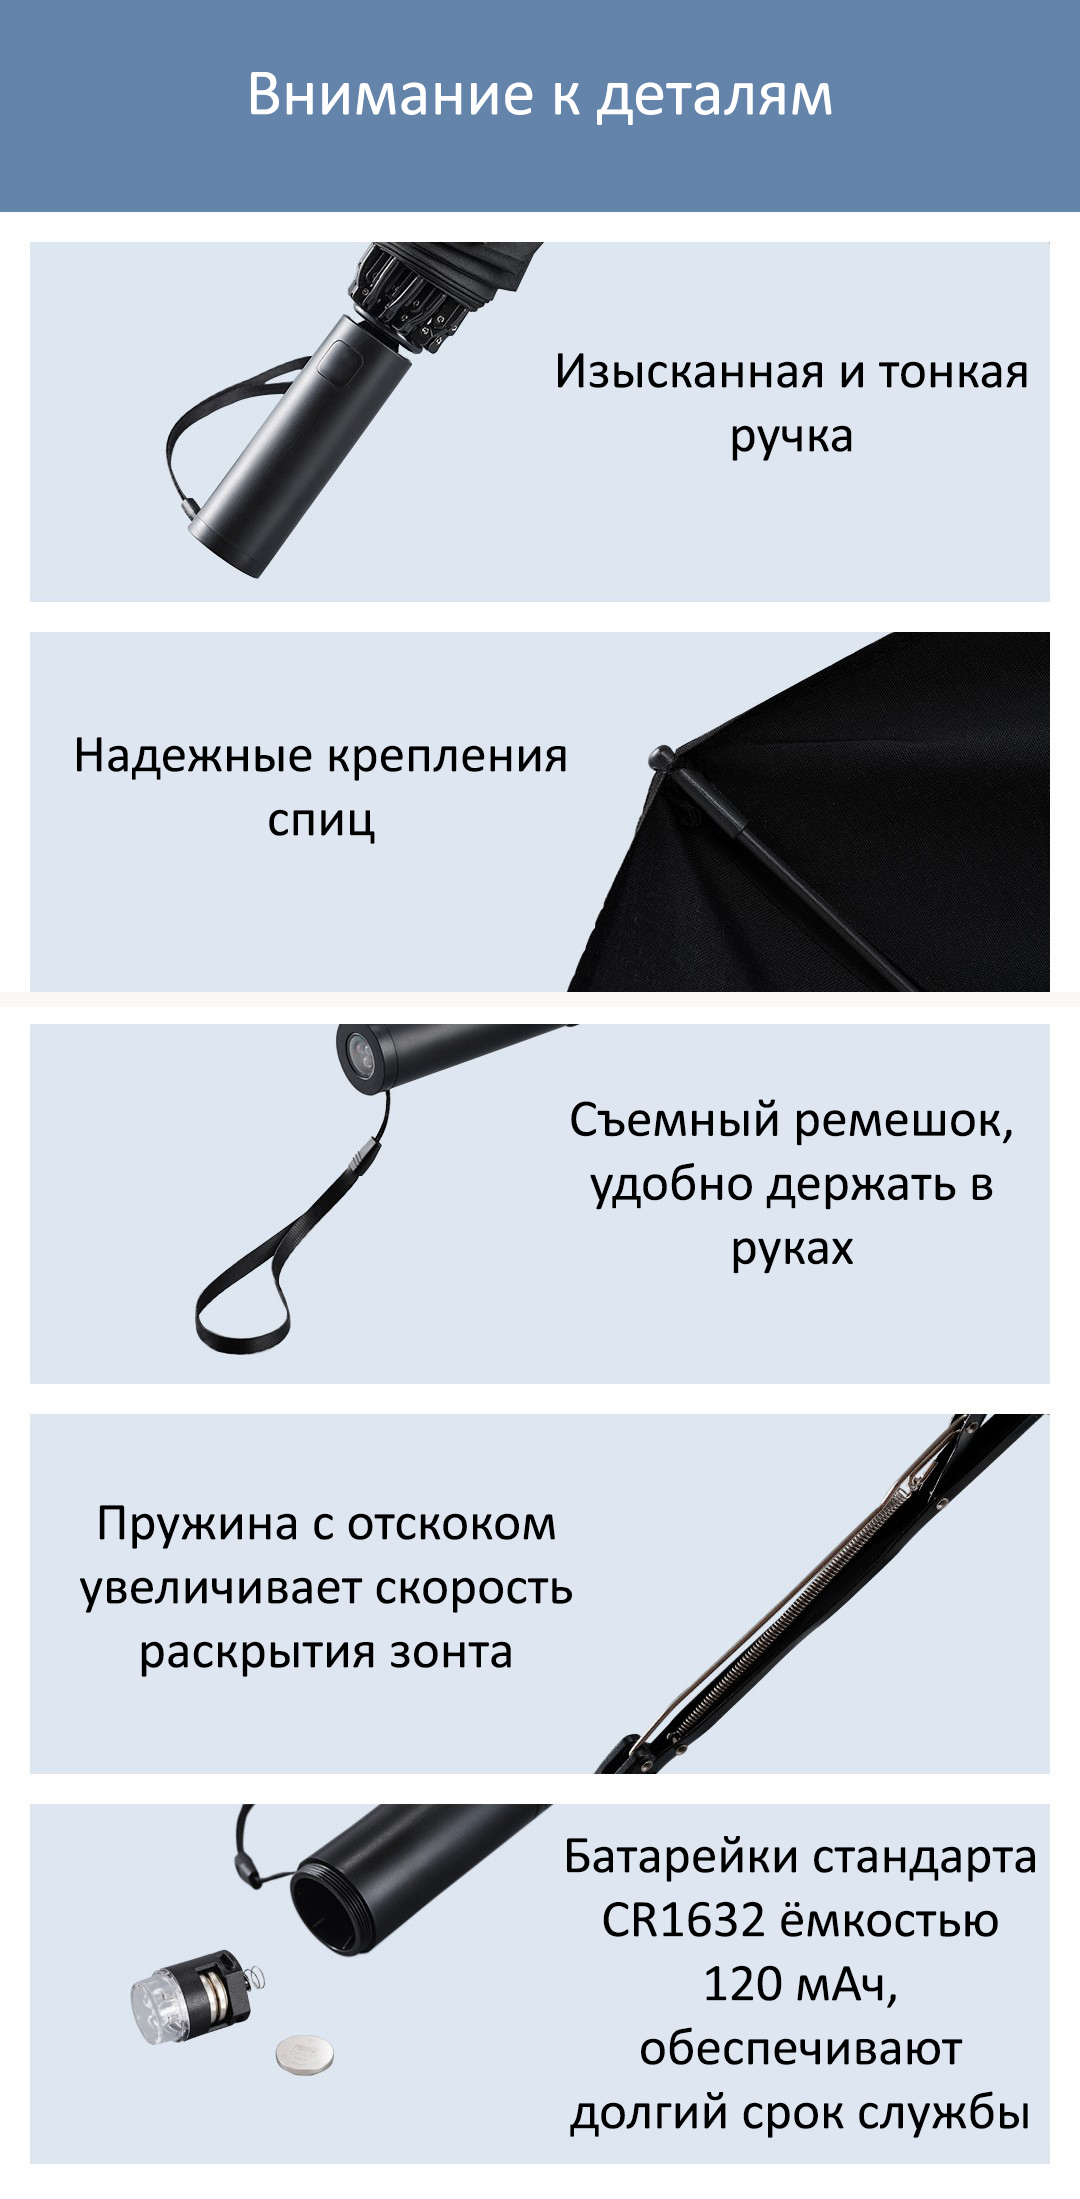 Зонт с фонарем Xiaomi Urevo Youqi Turn To Lighting Umbrella (URCOTNT2105U)